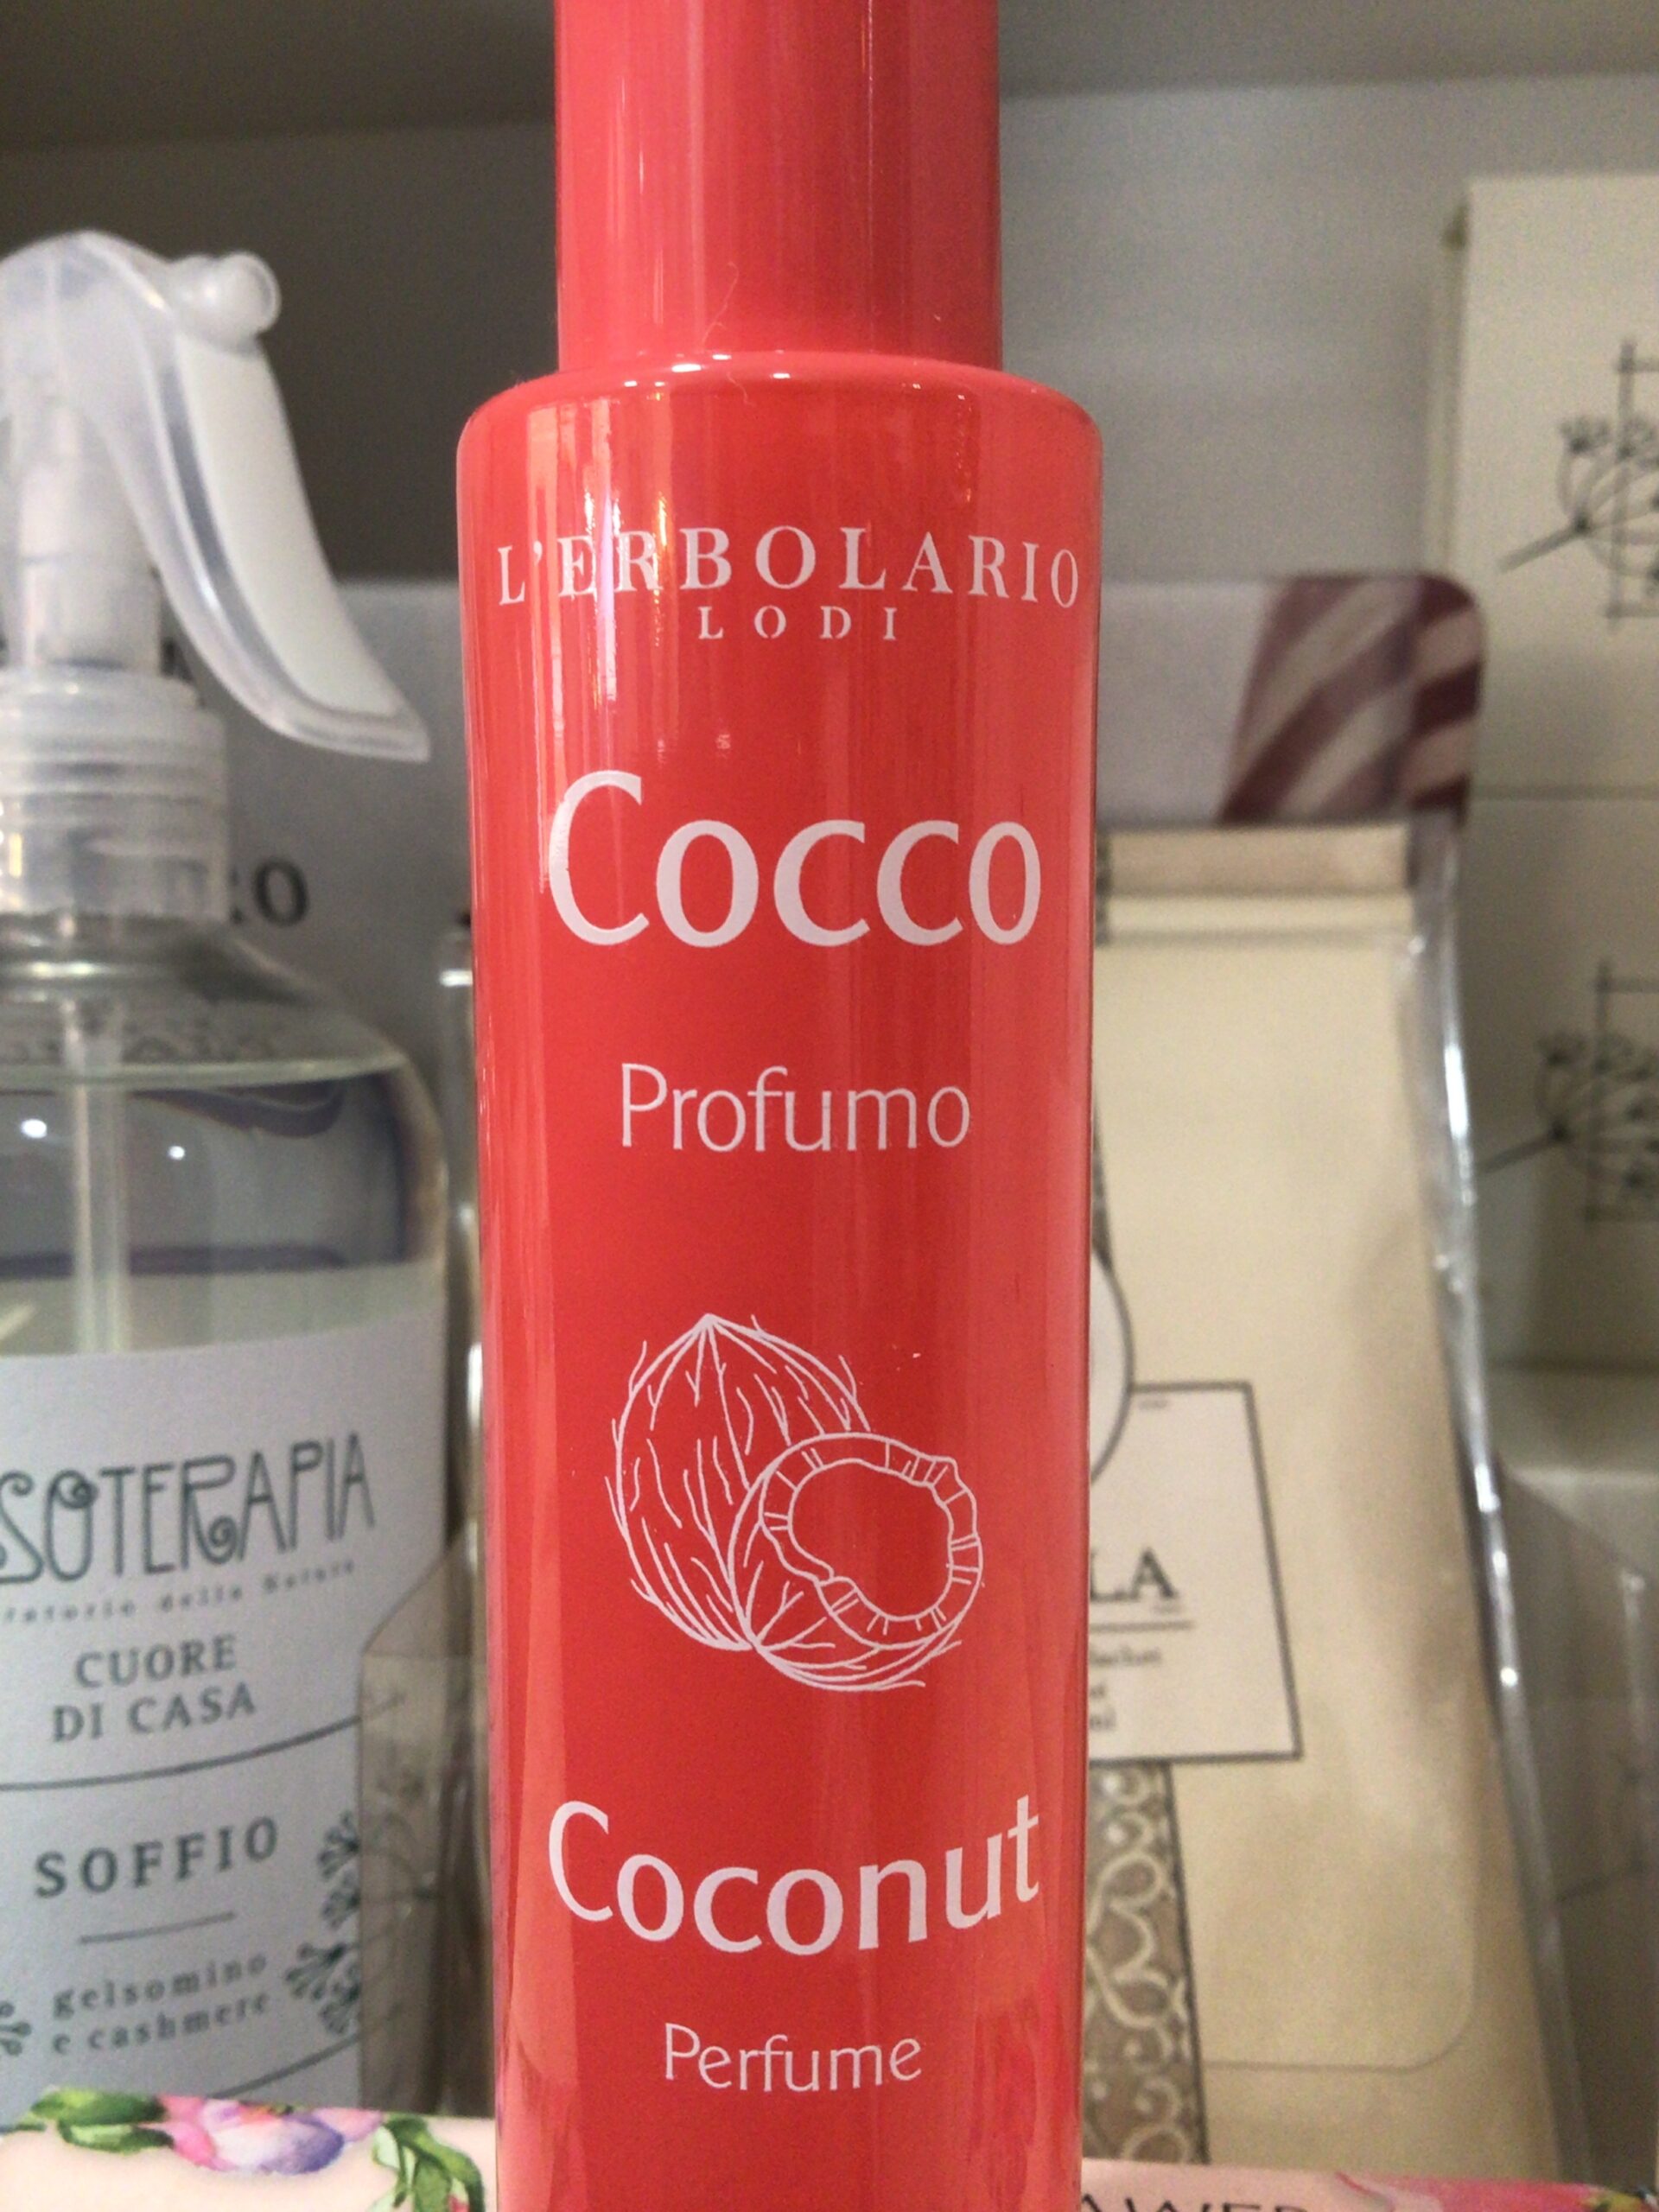 Profumo Cocco 50ml. L'ERBOLARIO - Keep It Up!